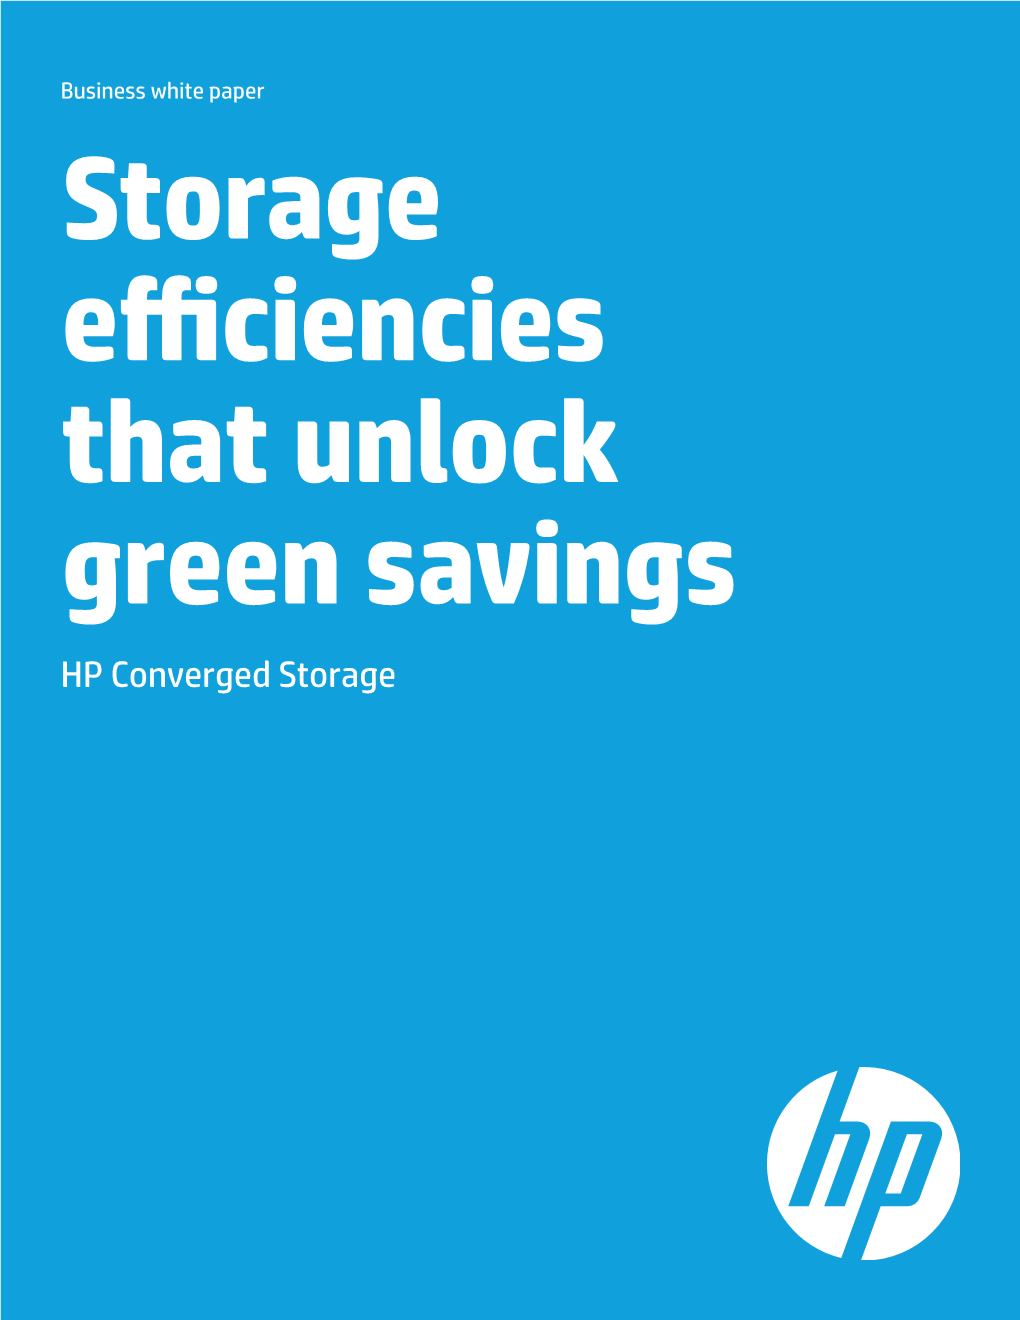 HP Converged Storage